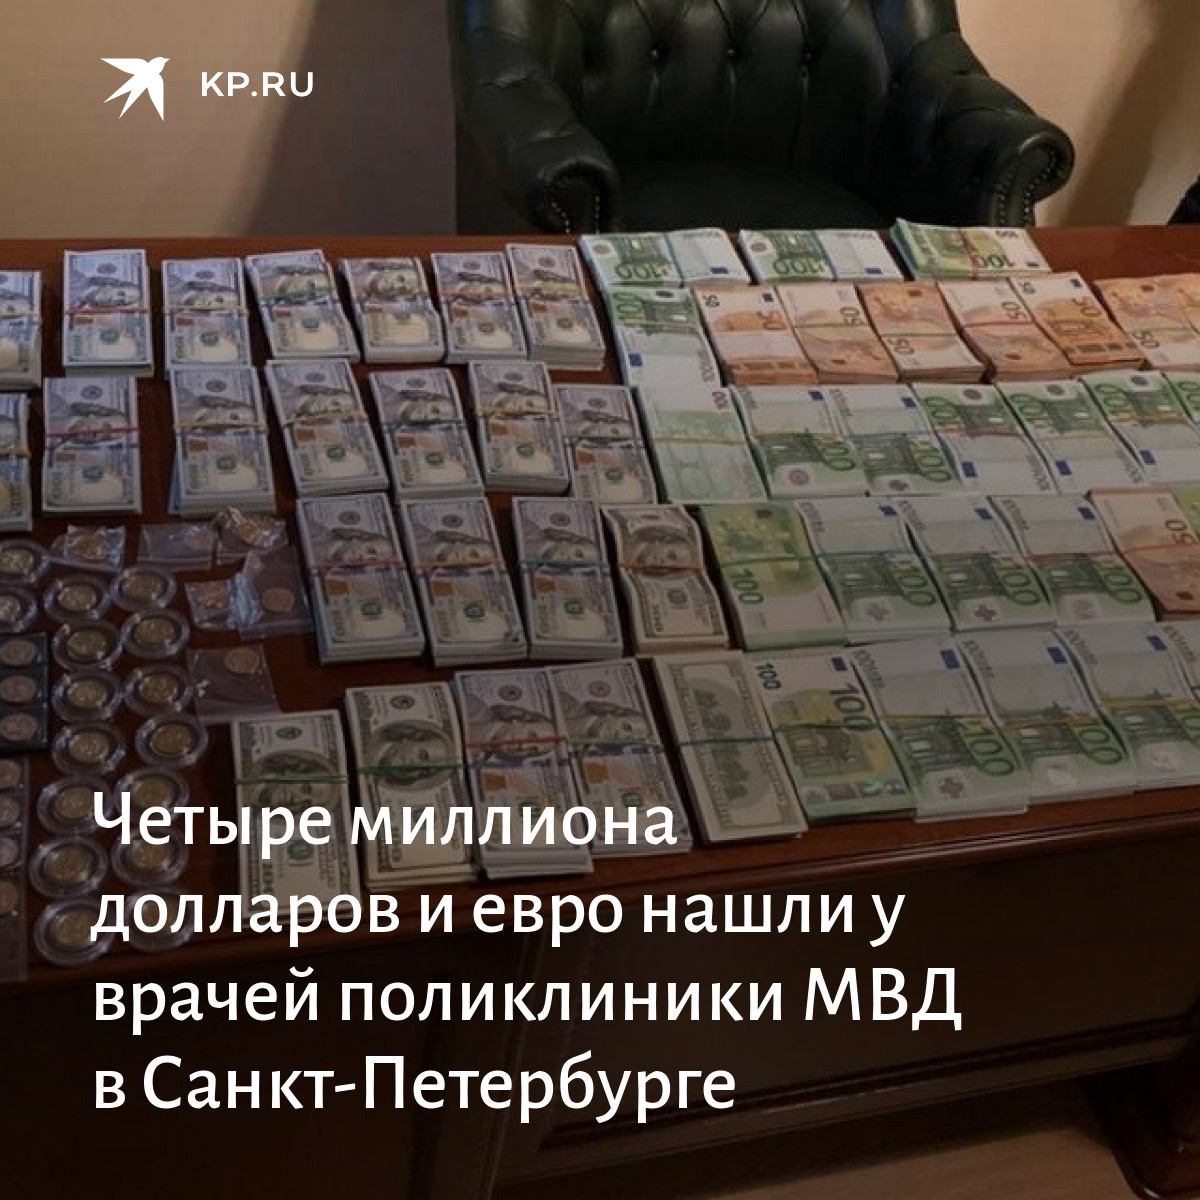 Кредит на 1000000 миллионов долларов. 1000000 Рублей на открытие бизнеса. Кредит 1000000 рублей наличными. Как получить миллион.